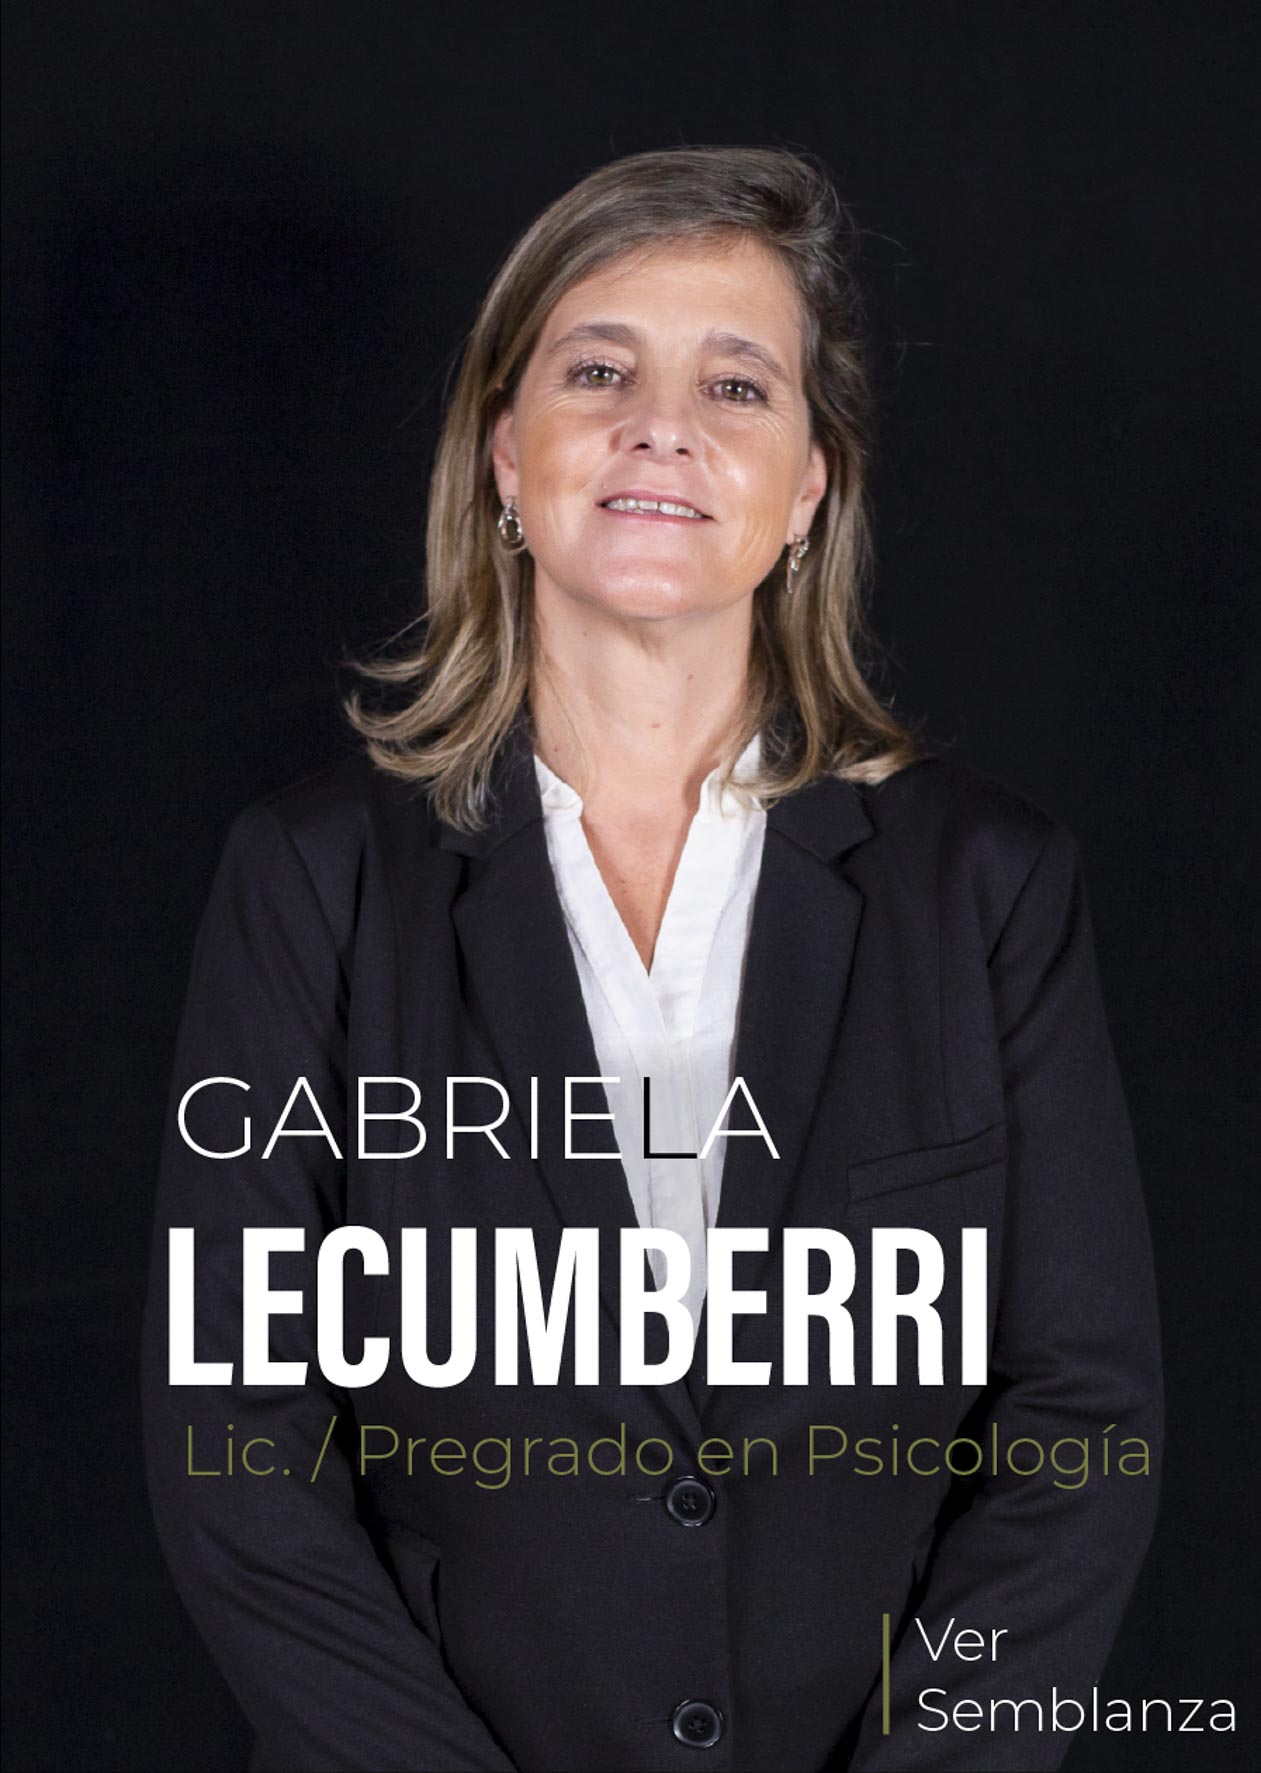 Gabriela Lecumberri